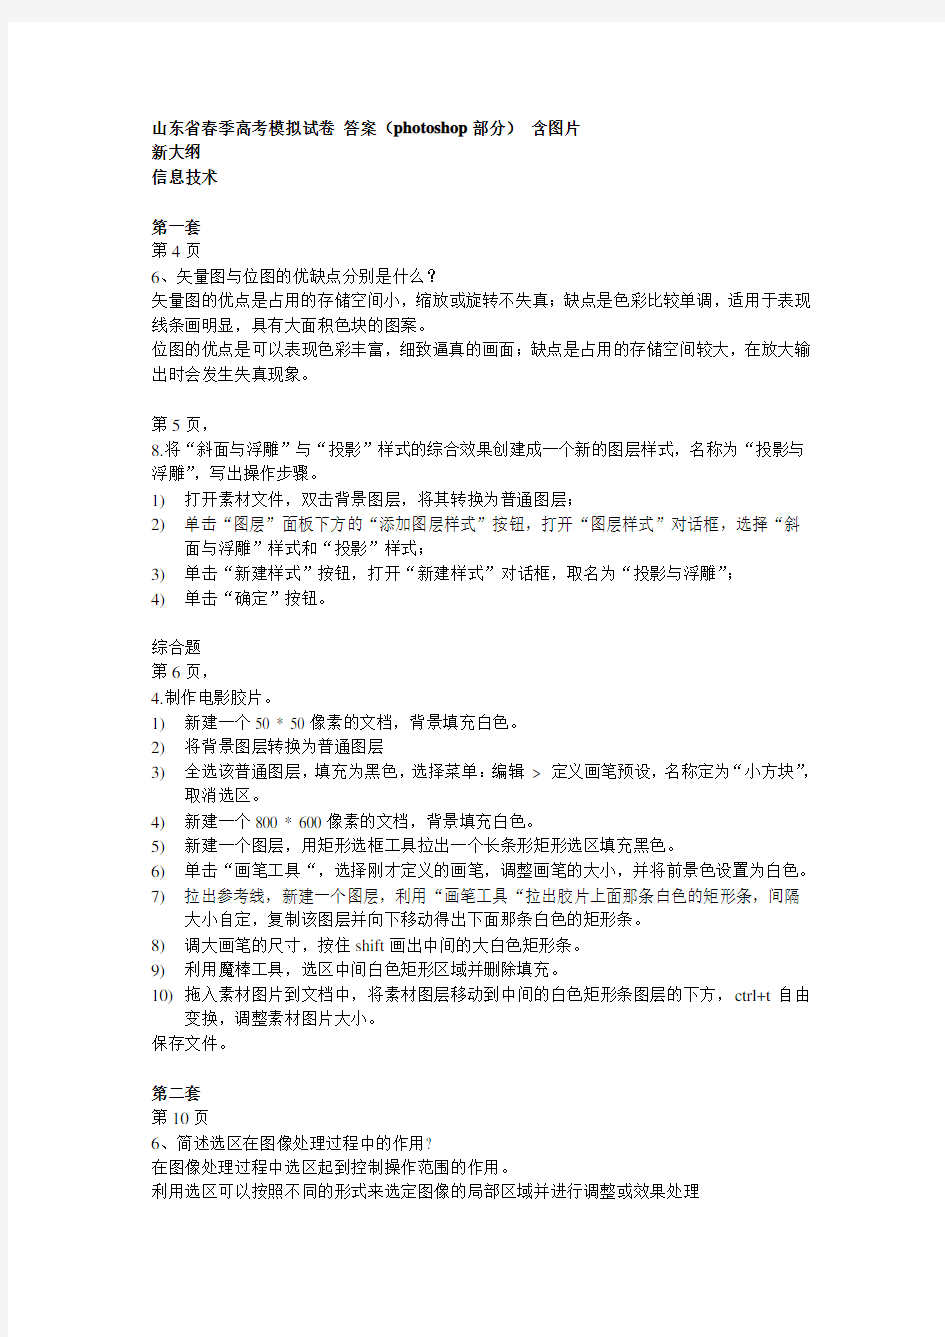 2015山东省春季高考模拟试卷信息技术photoshop部分 答案(含图片)